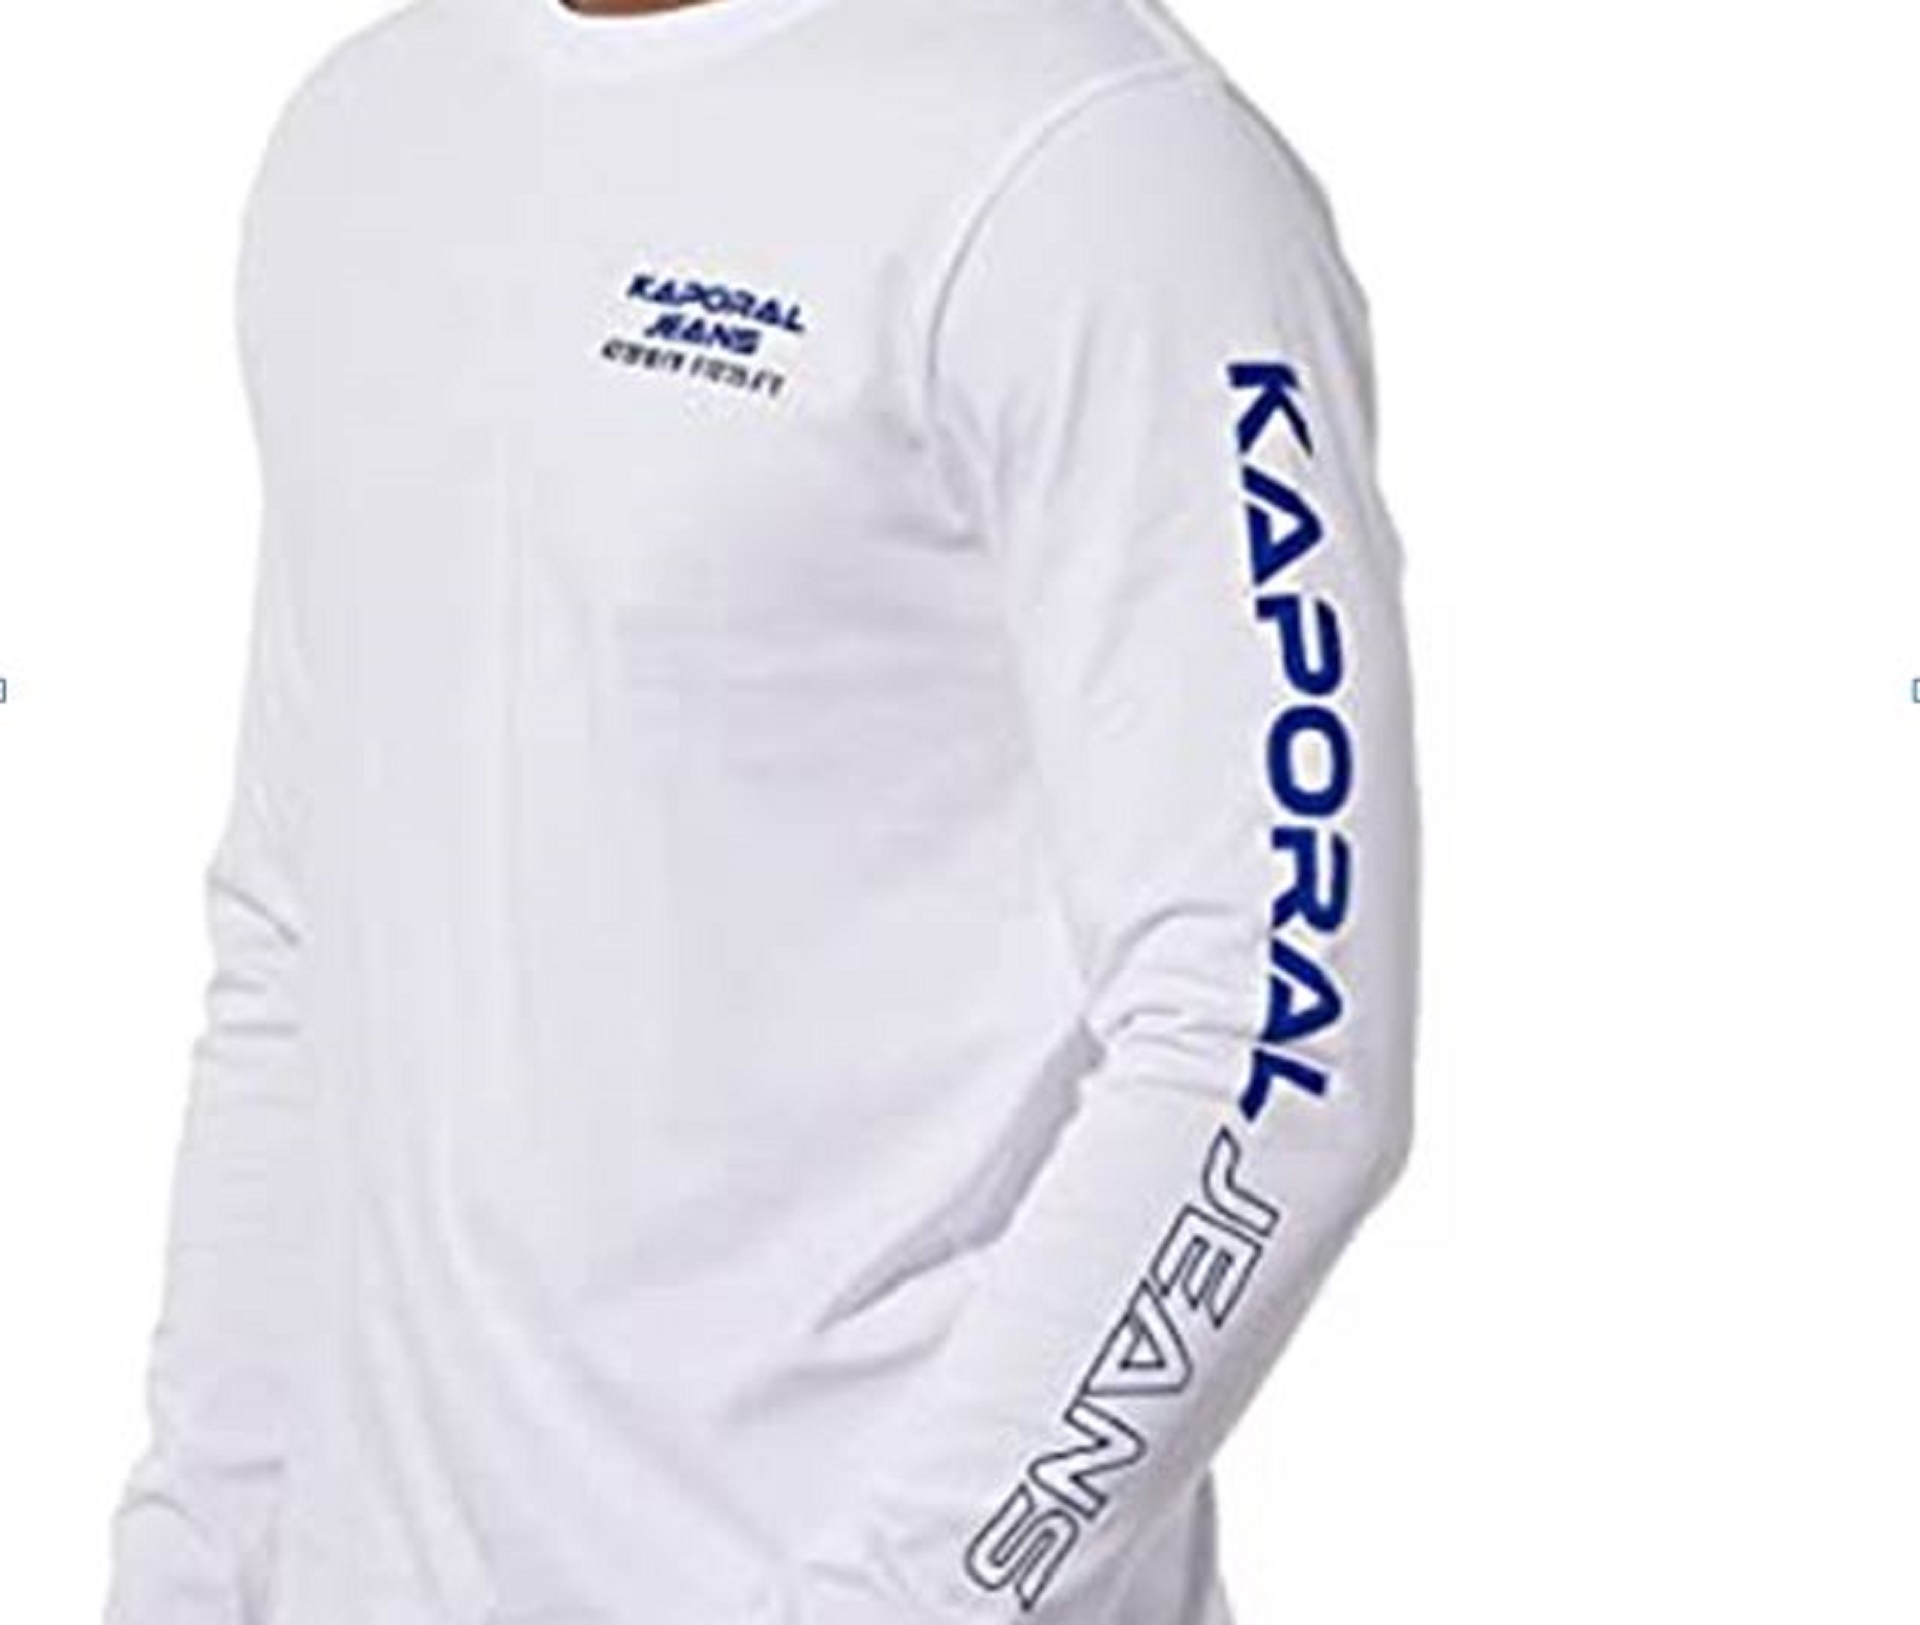 Kaporal homme : le t-shirt à manche longue star du dressing homme